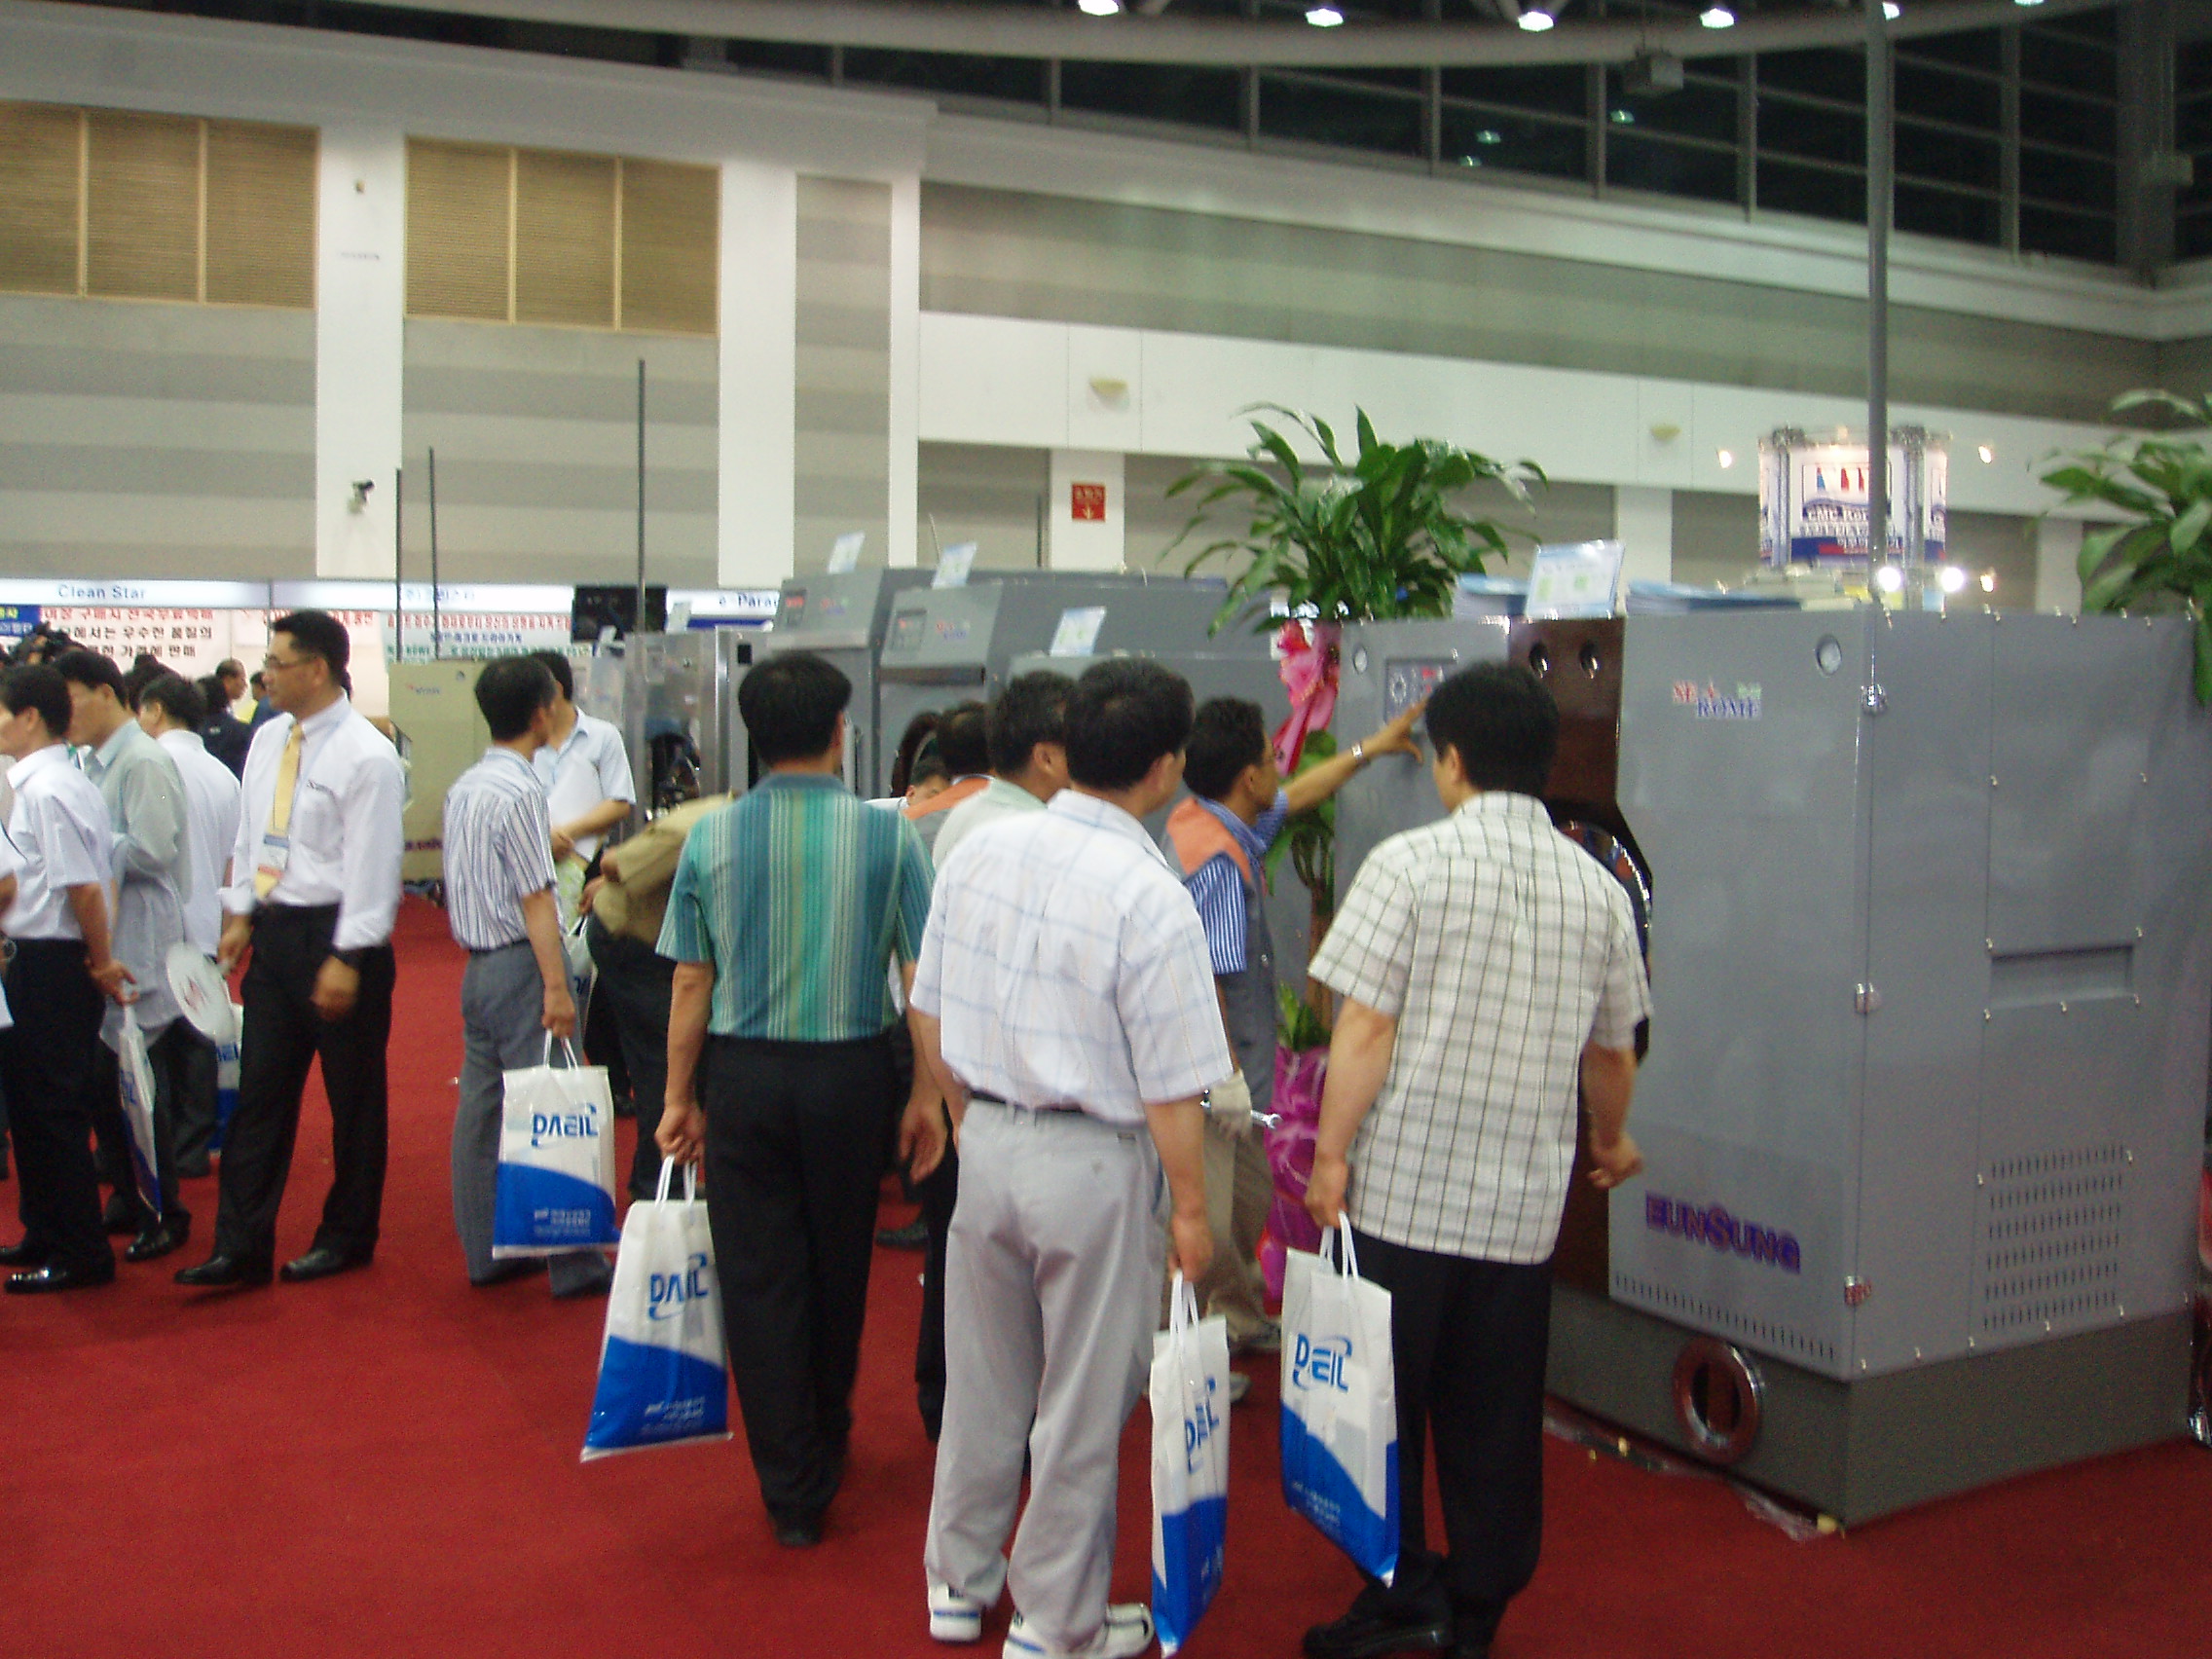 2007 Washing Machine Materials Exhibition (Daegu)